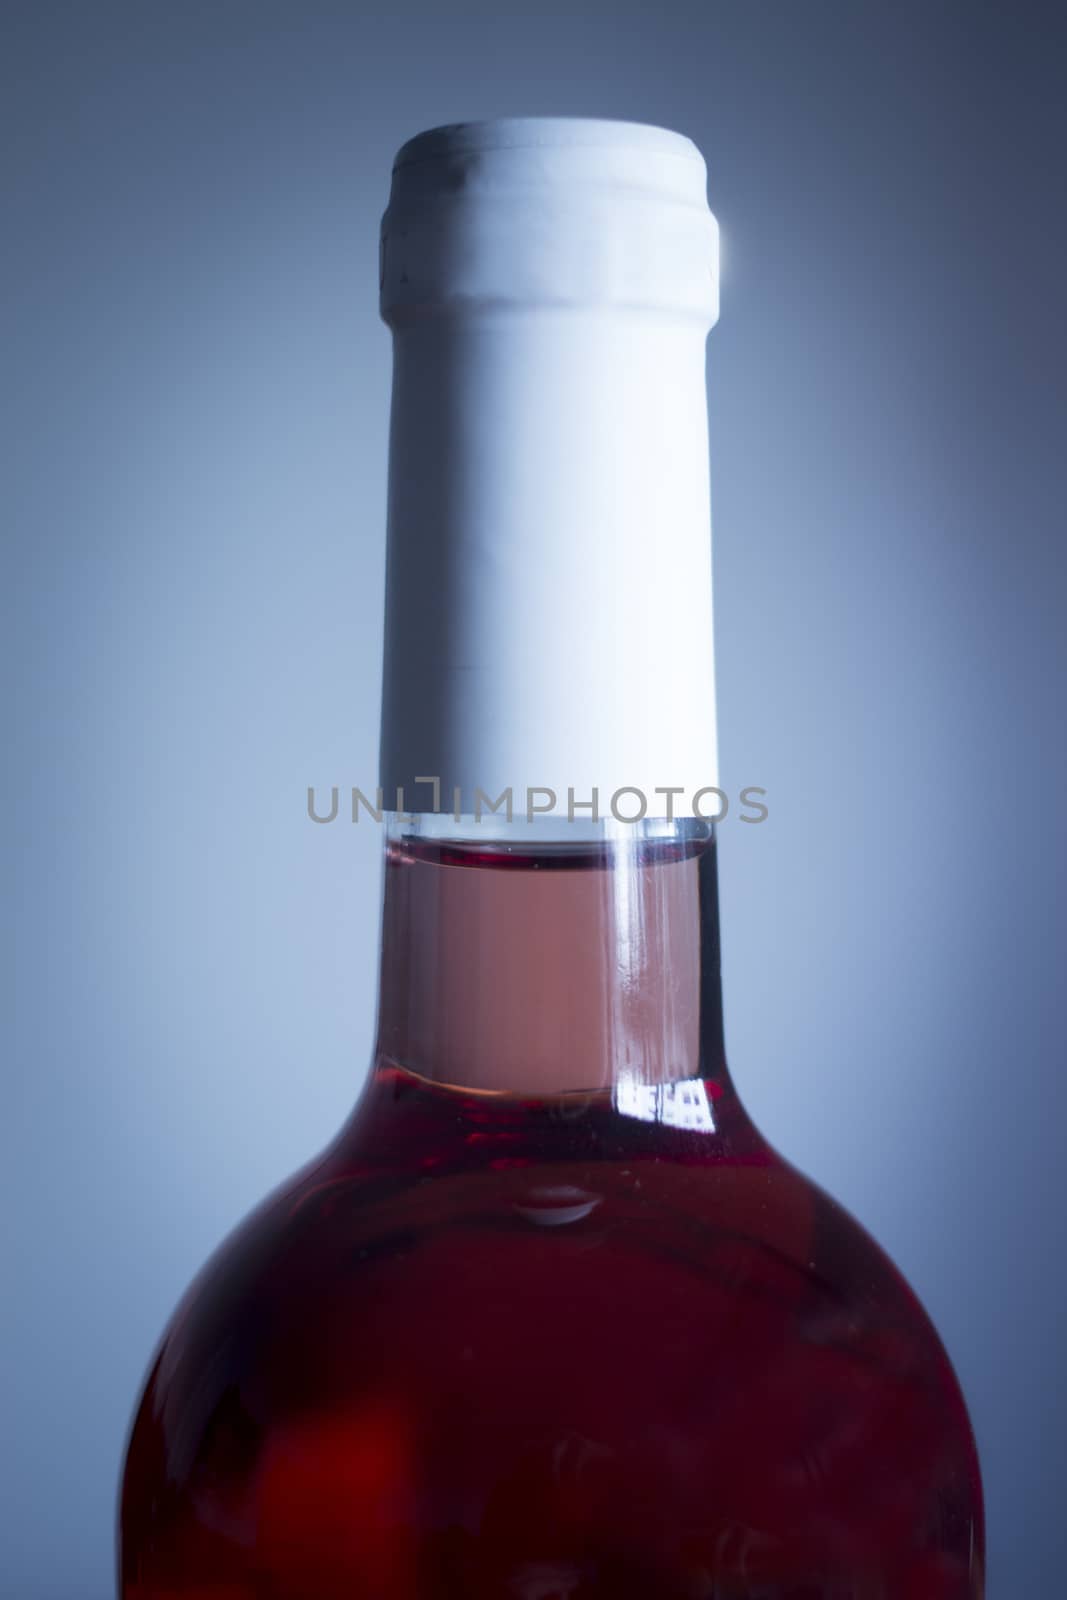 Rose wine bottle studio isolated close-up on plain blue background color photo.